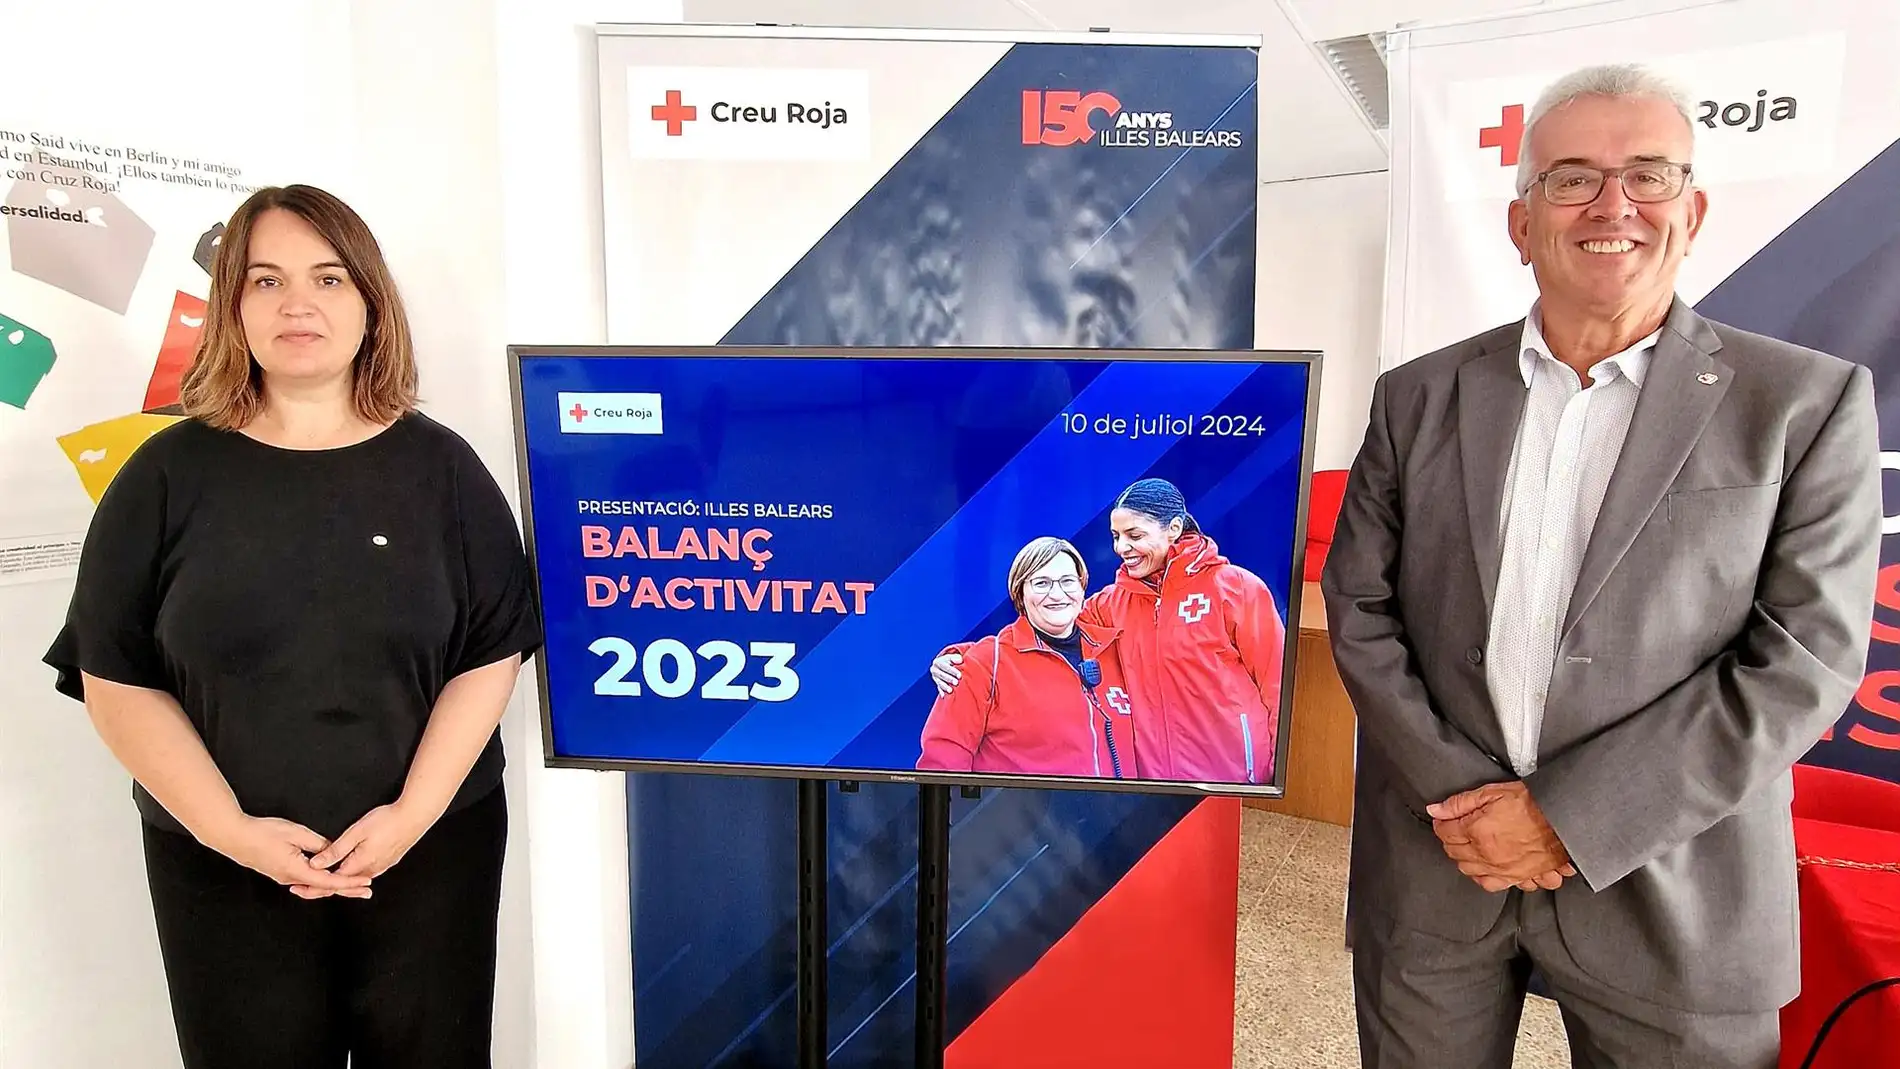 Cruz Roja destinó un 57% de las ayudas de 2023 en Baleares a la entrega de alimentos